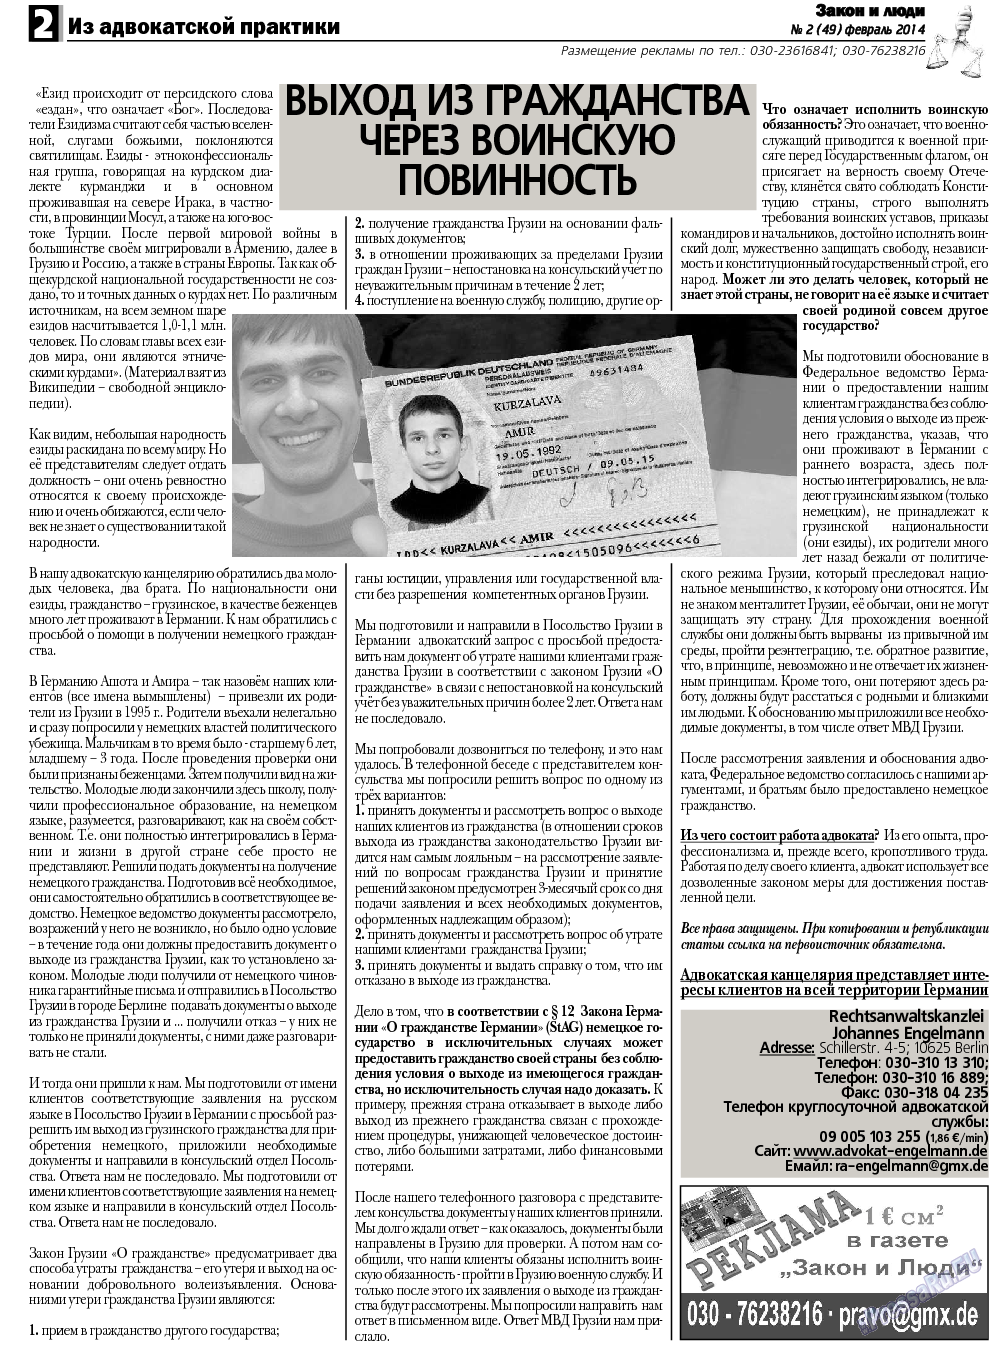 Закон и люди, газета. 2014 №2 стр.2